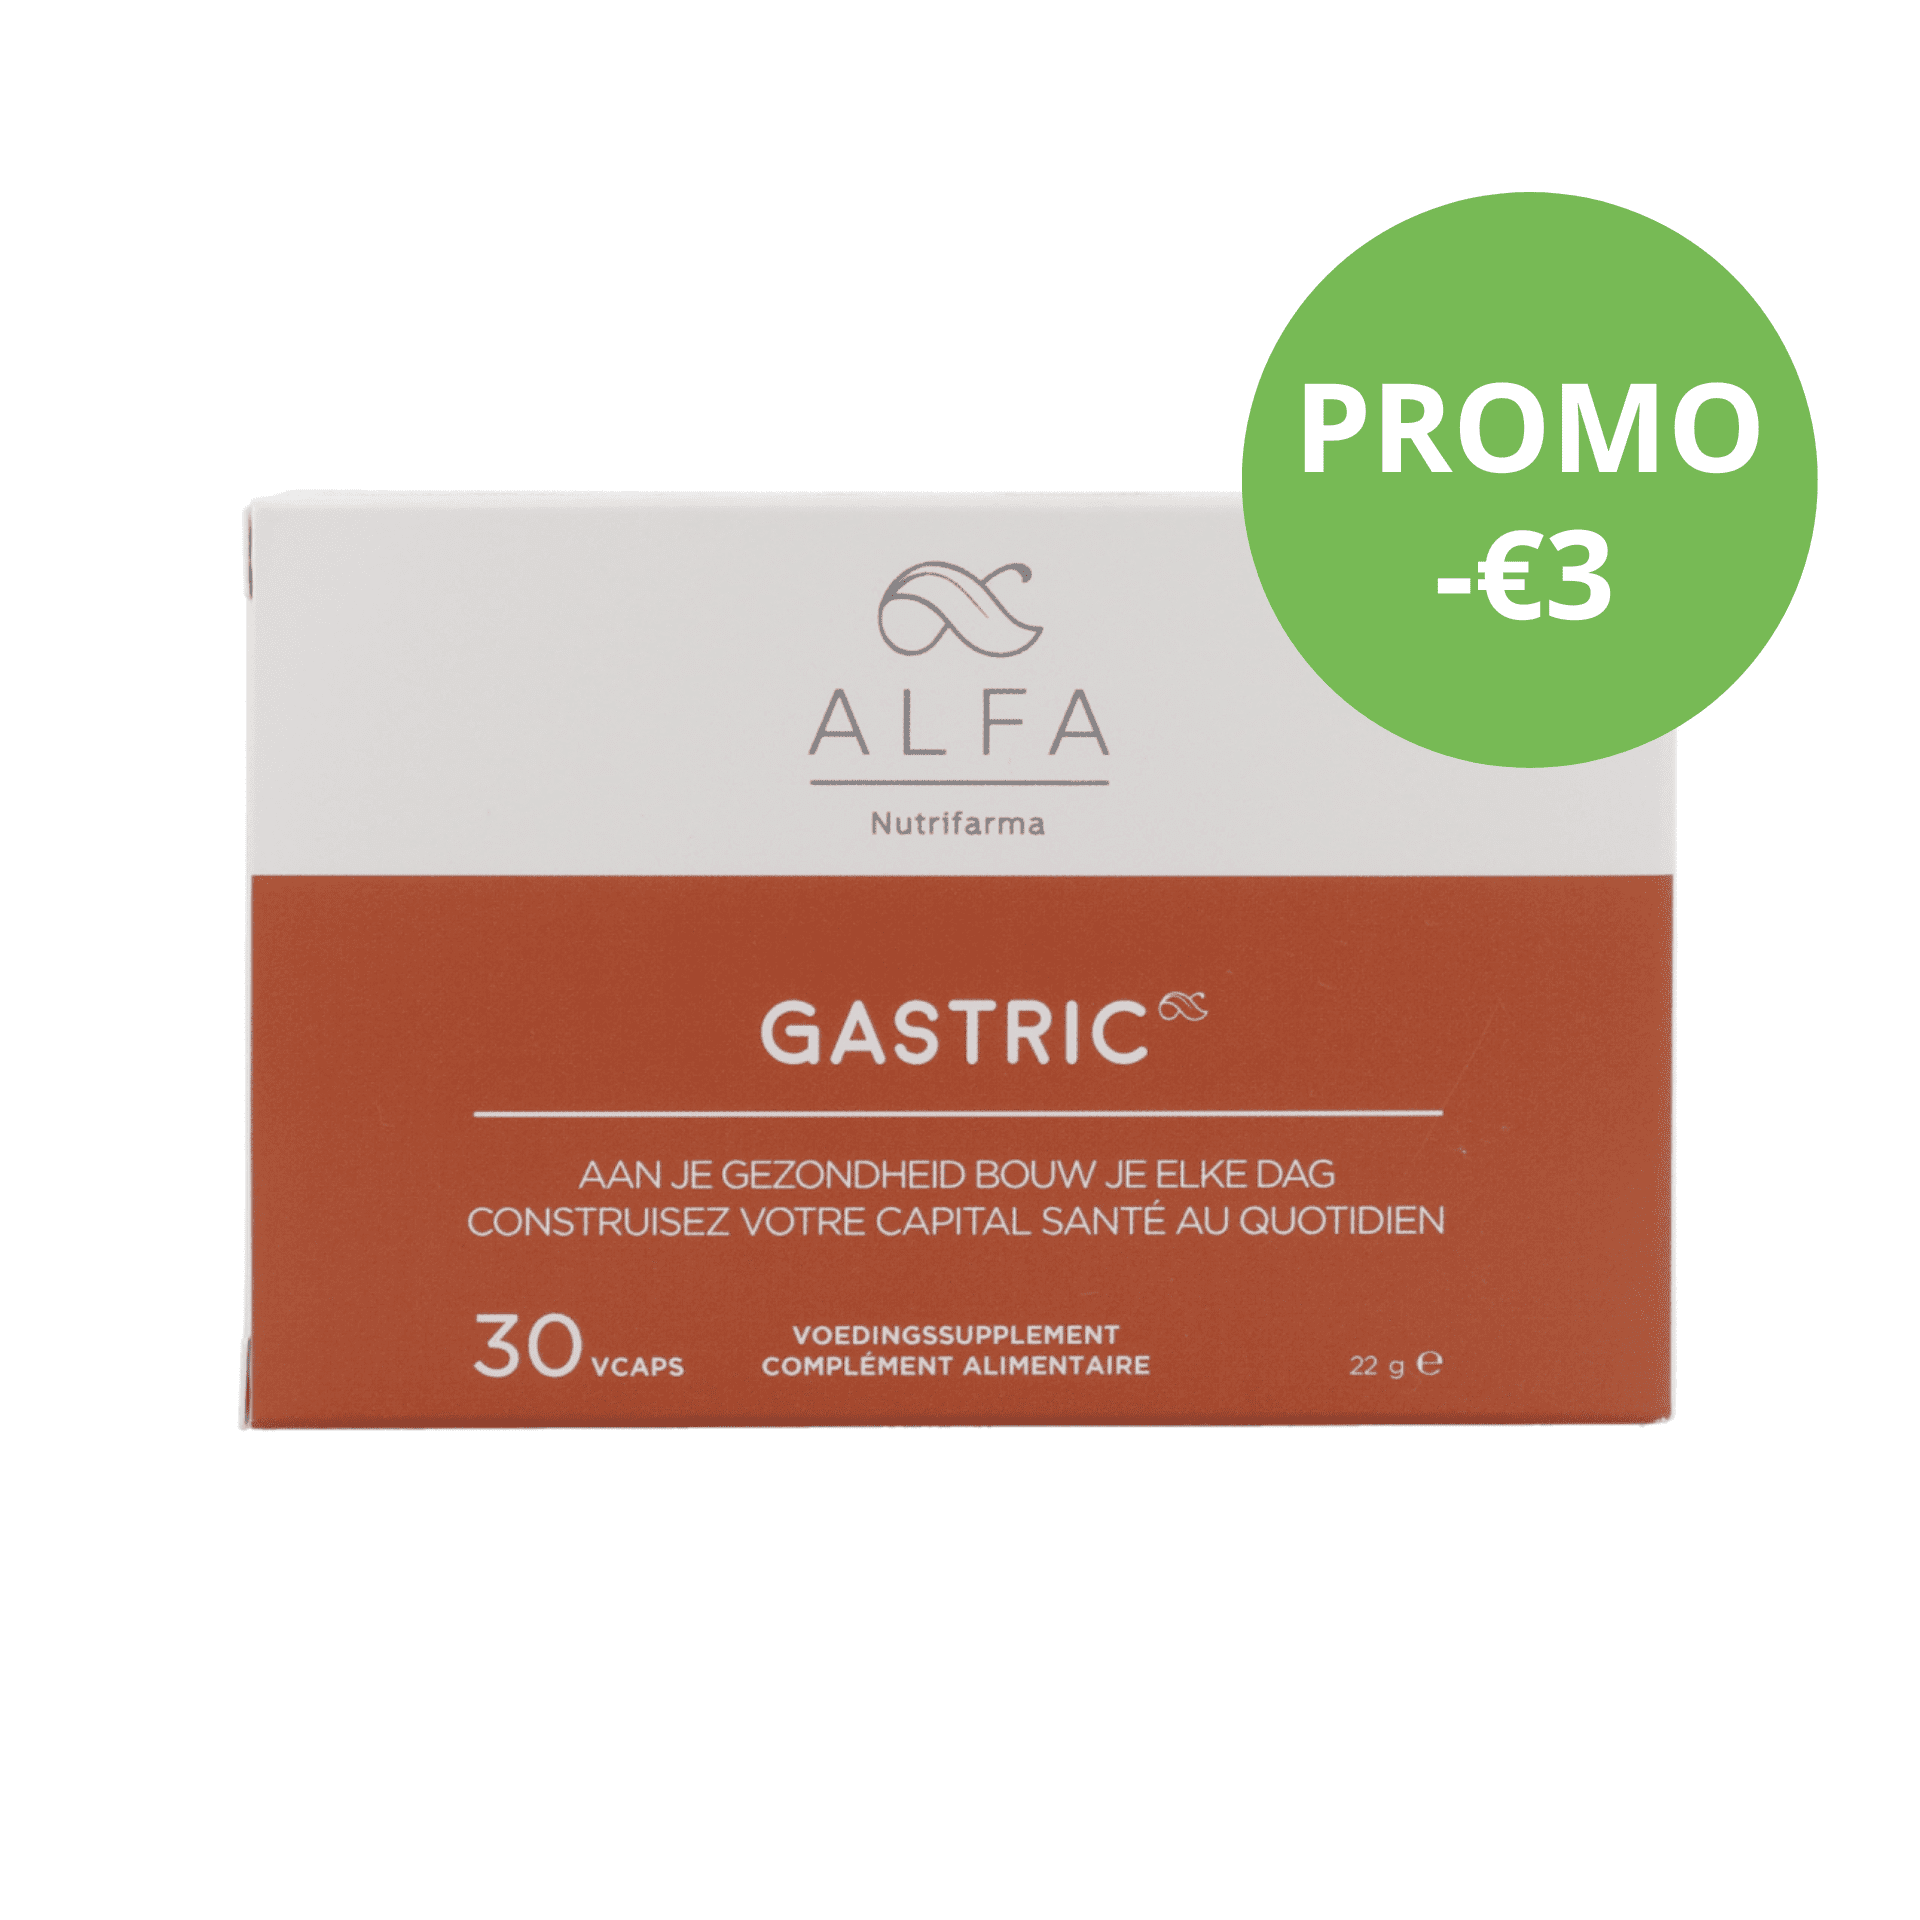 Alfa Gastric PROMO -€3